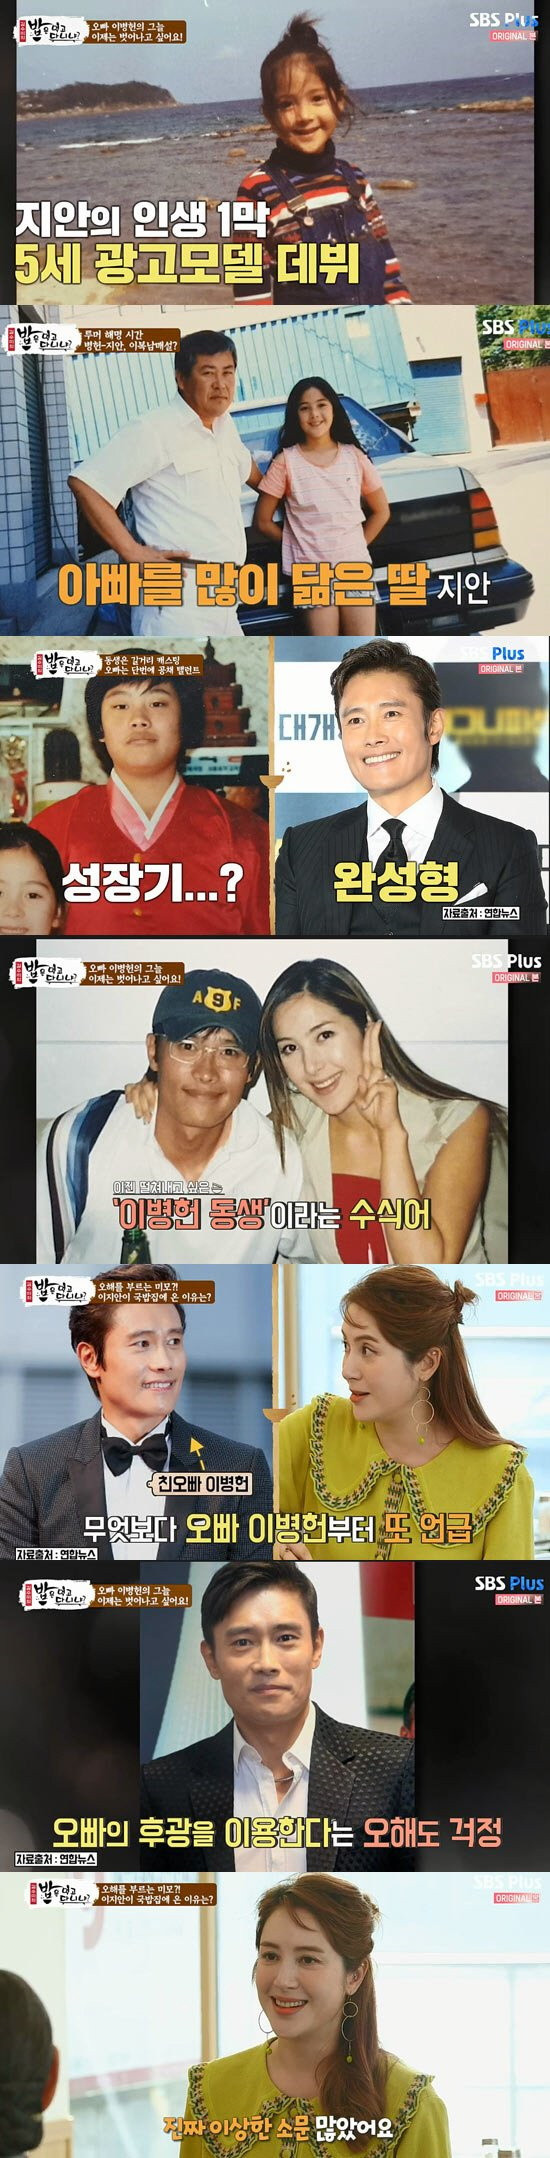 Mối quan hệ bí ẩn nhất Kbiz nay đã có lời giải: Hoa hậu Hàn Quốc 1996 có phải em ruột tài tử Lee Byung Hun hay không? - Ảnh 3.